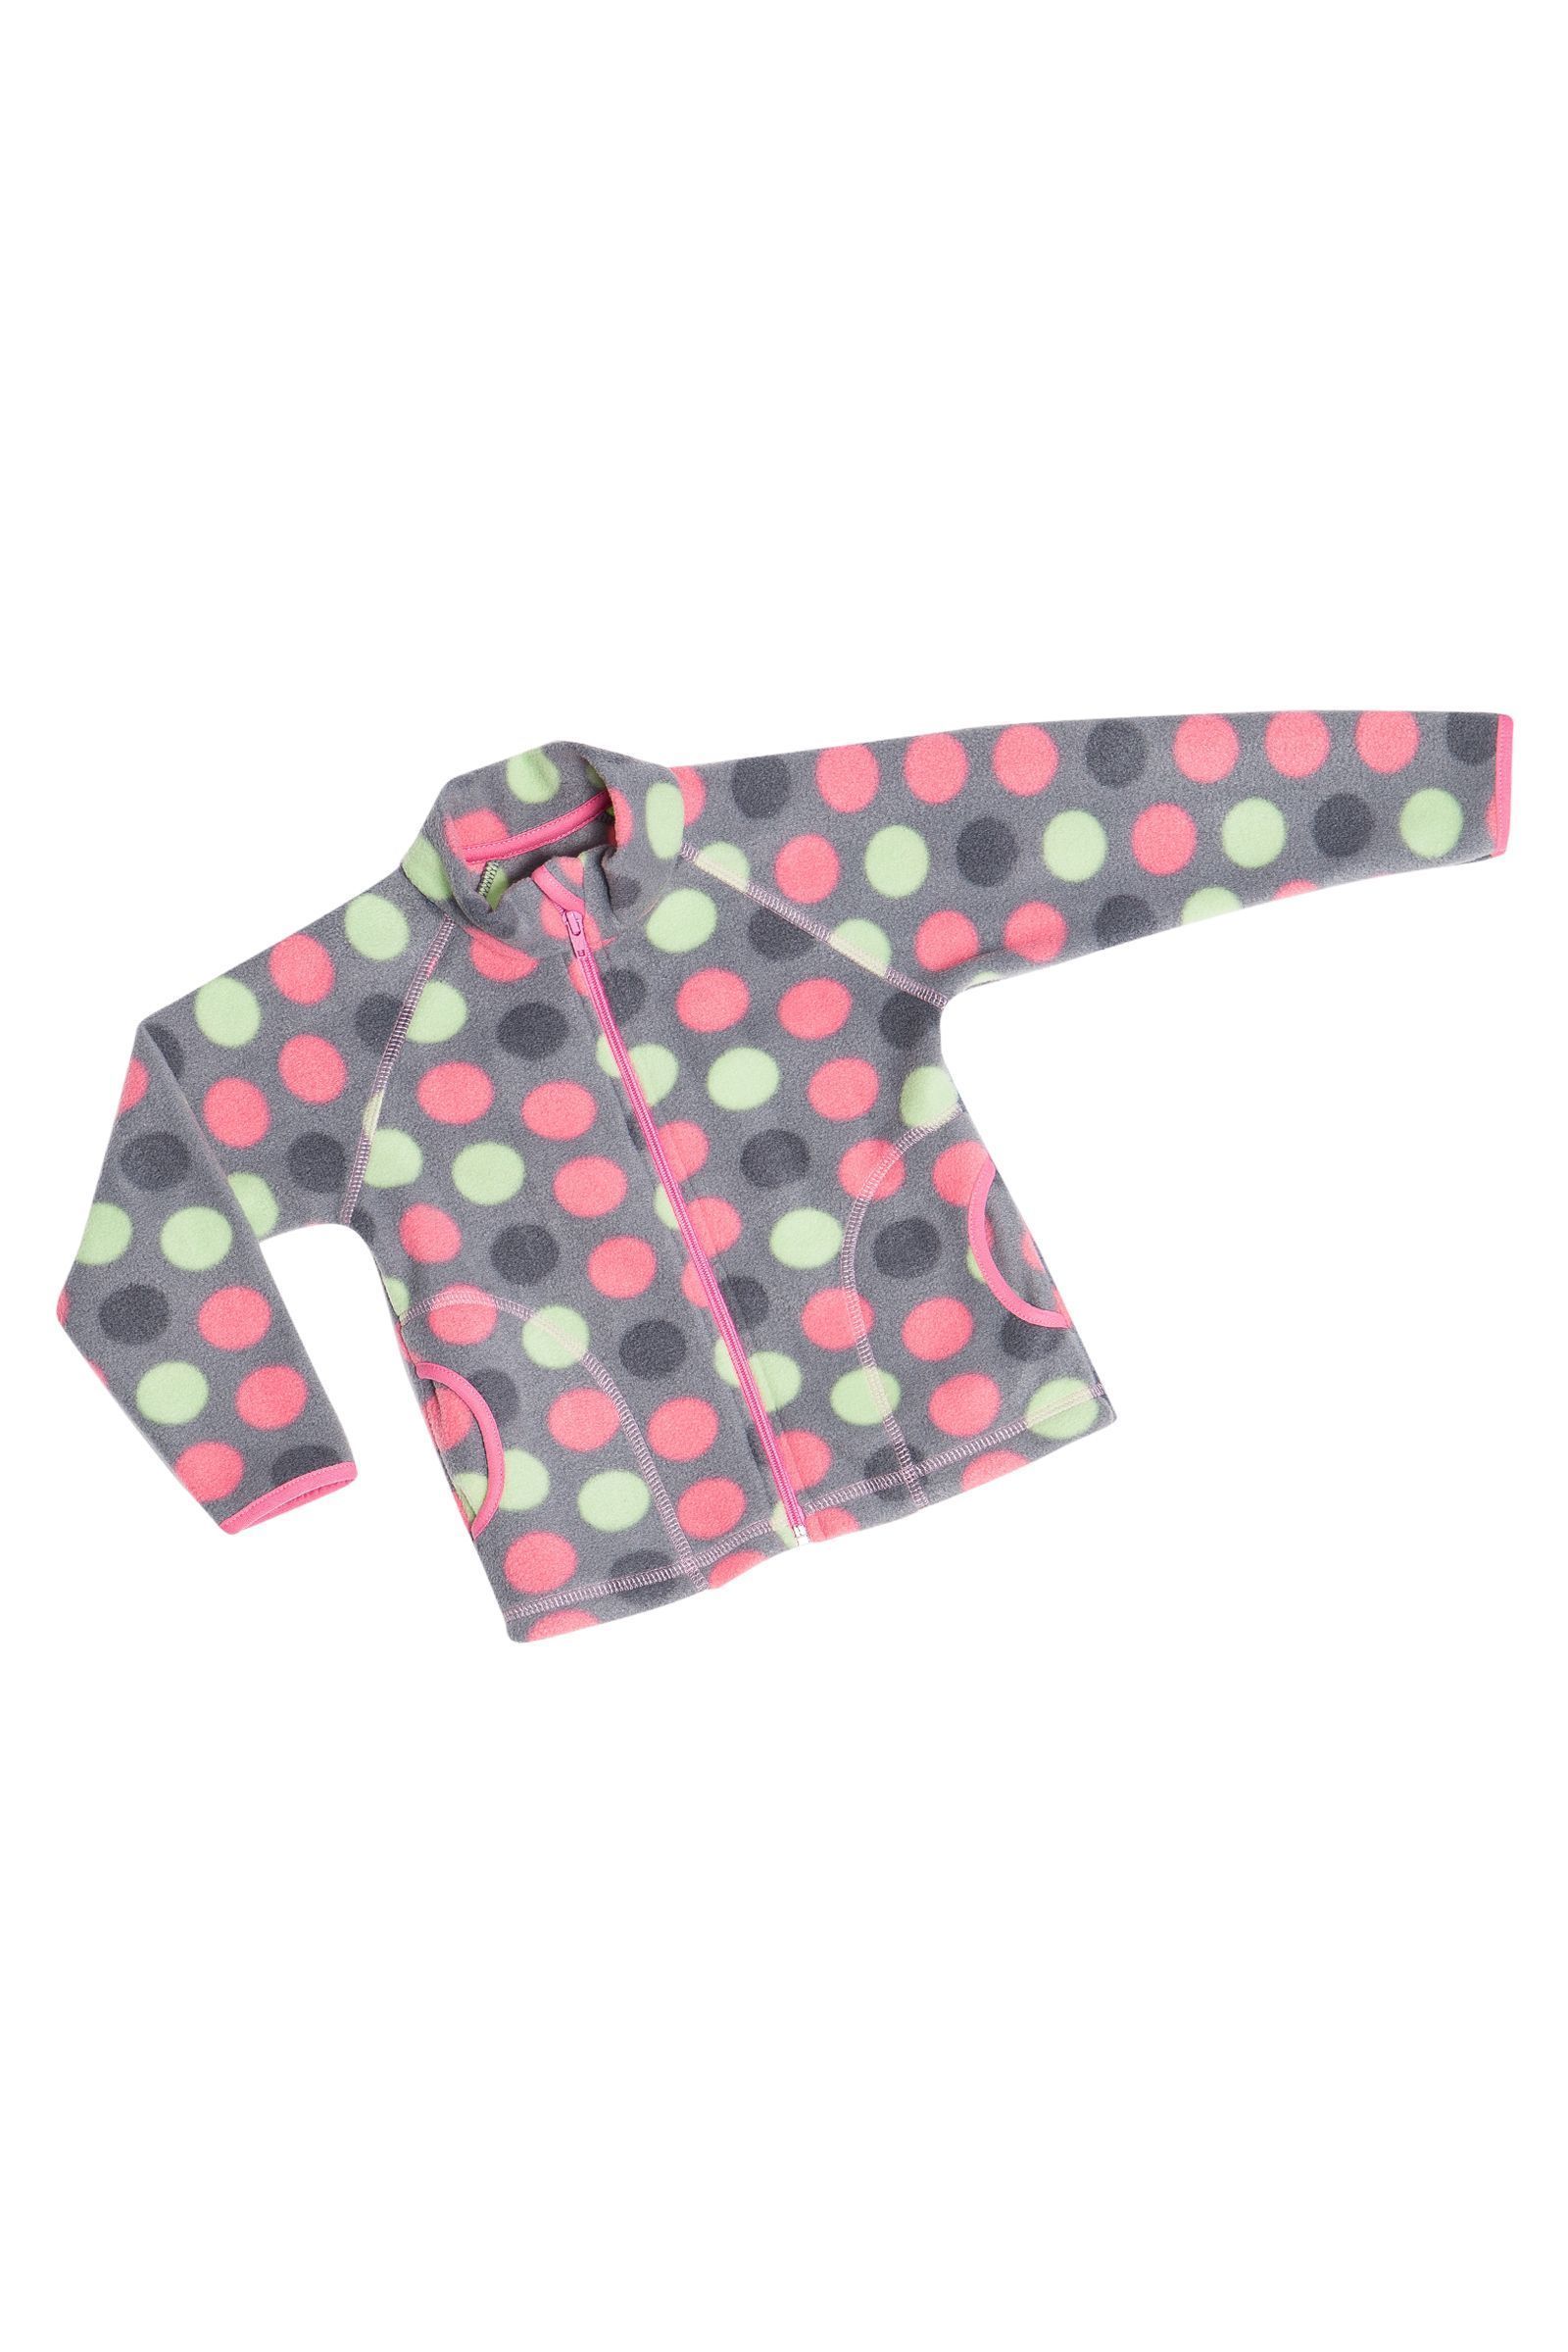 Куртка-КР08-3122 оптом от производителя детской одежды 'Алёна'